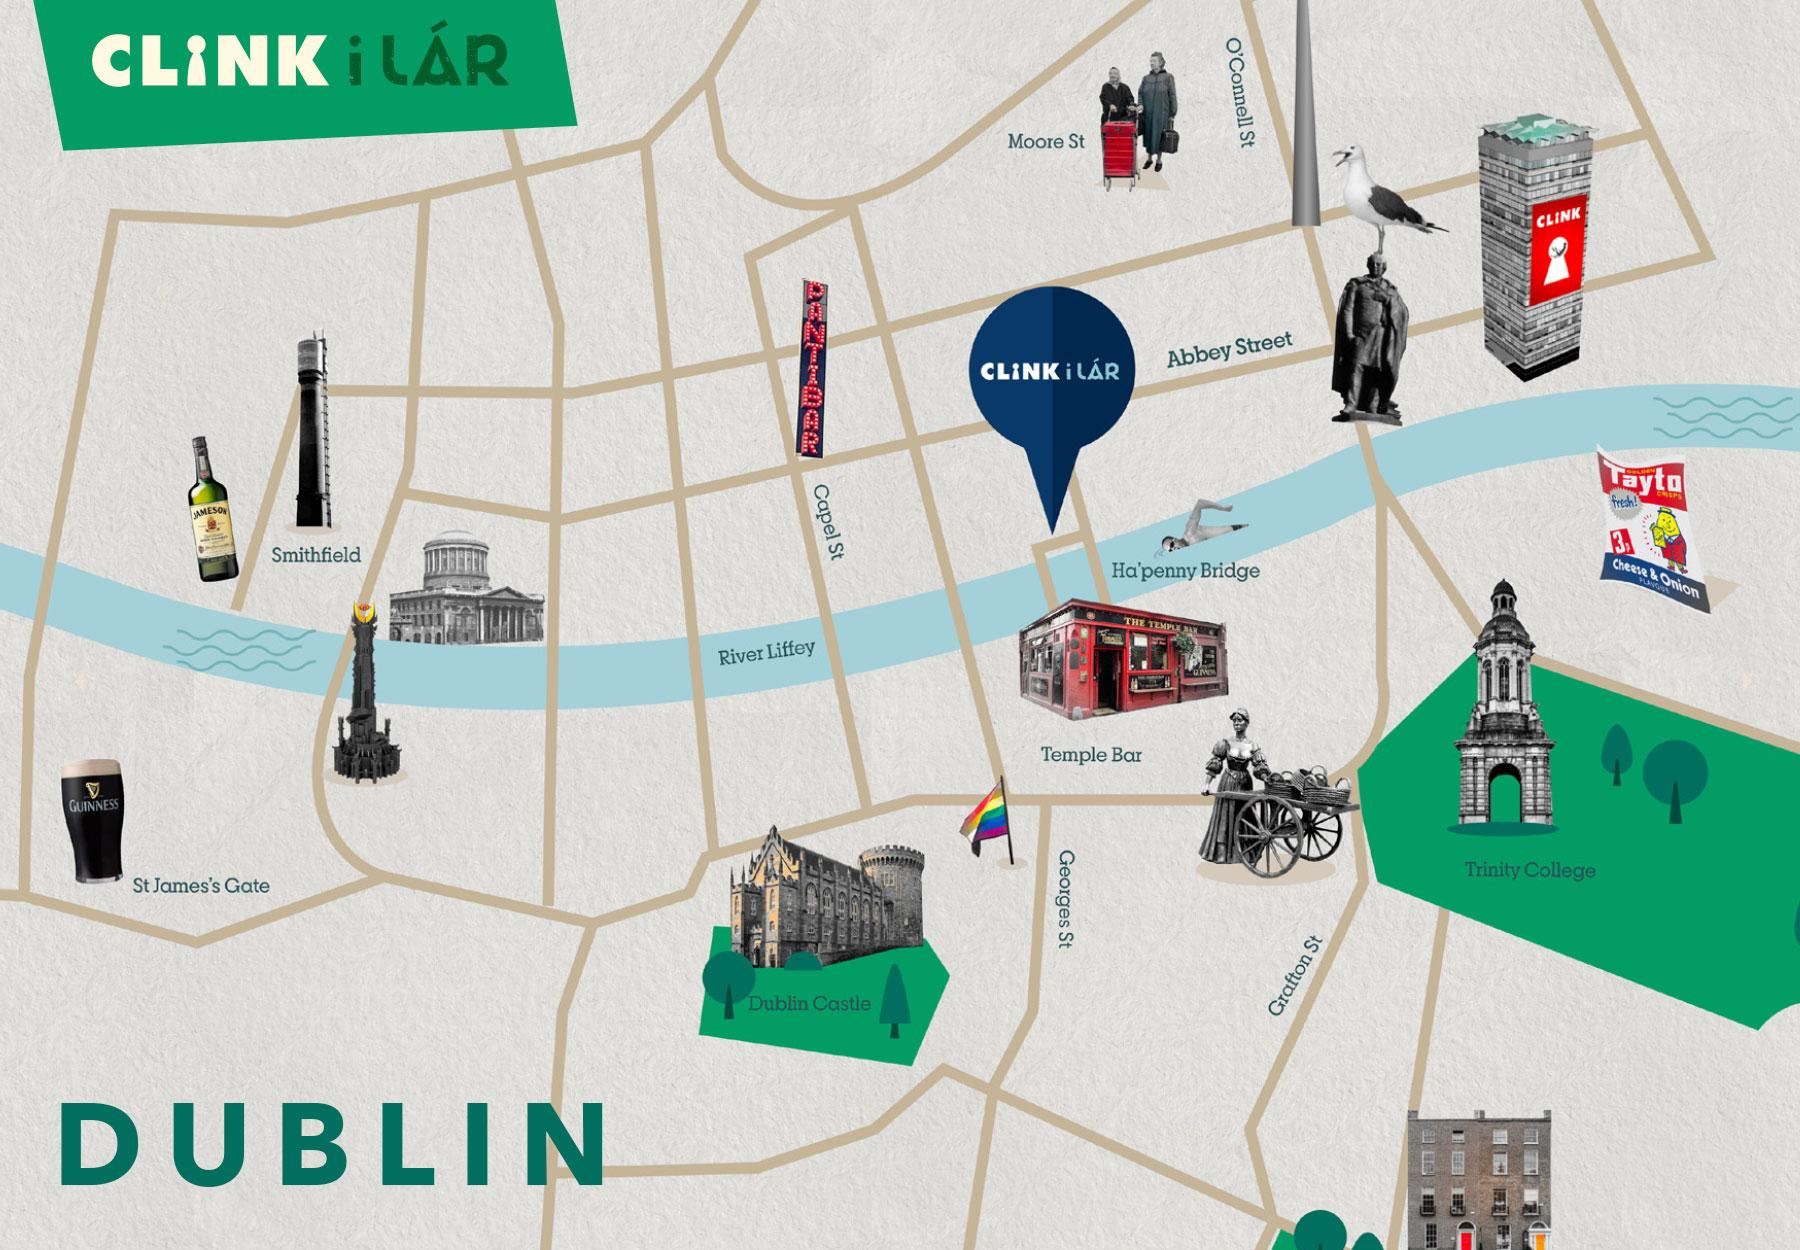 Mappa della città di Dublino con le principali attrazioni e la posizione di Clink i Lar